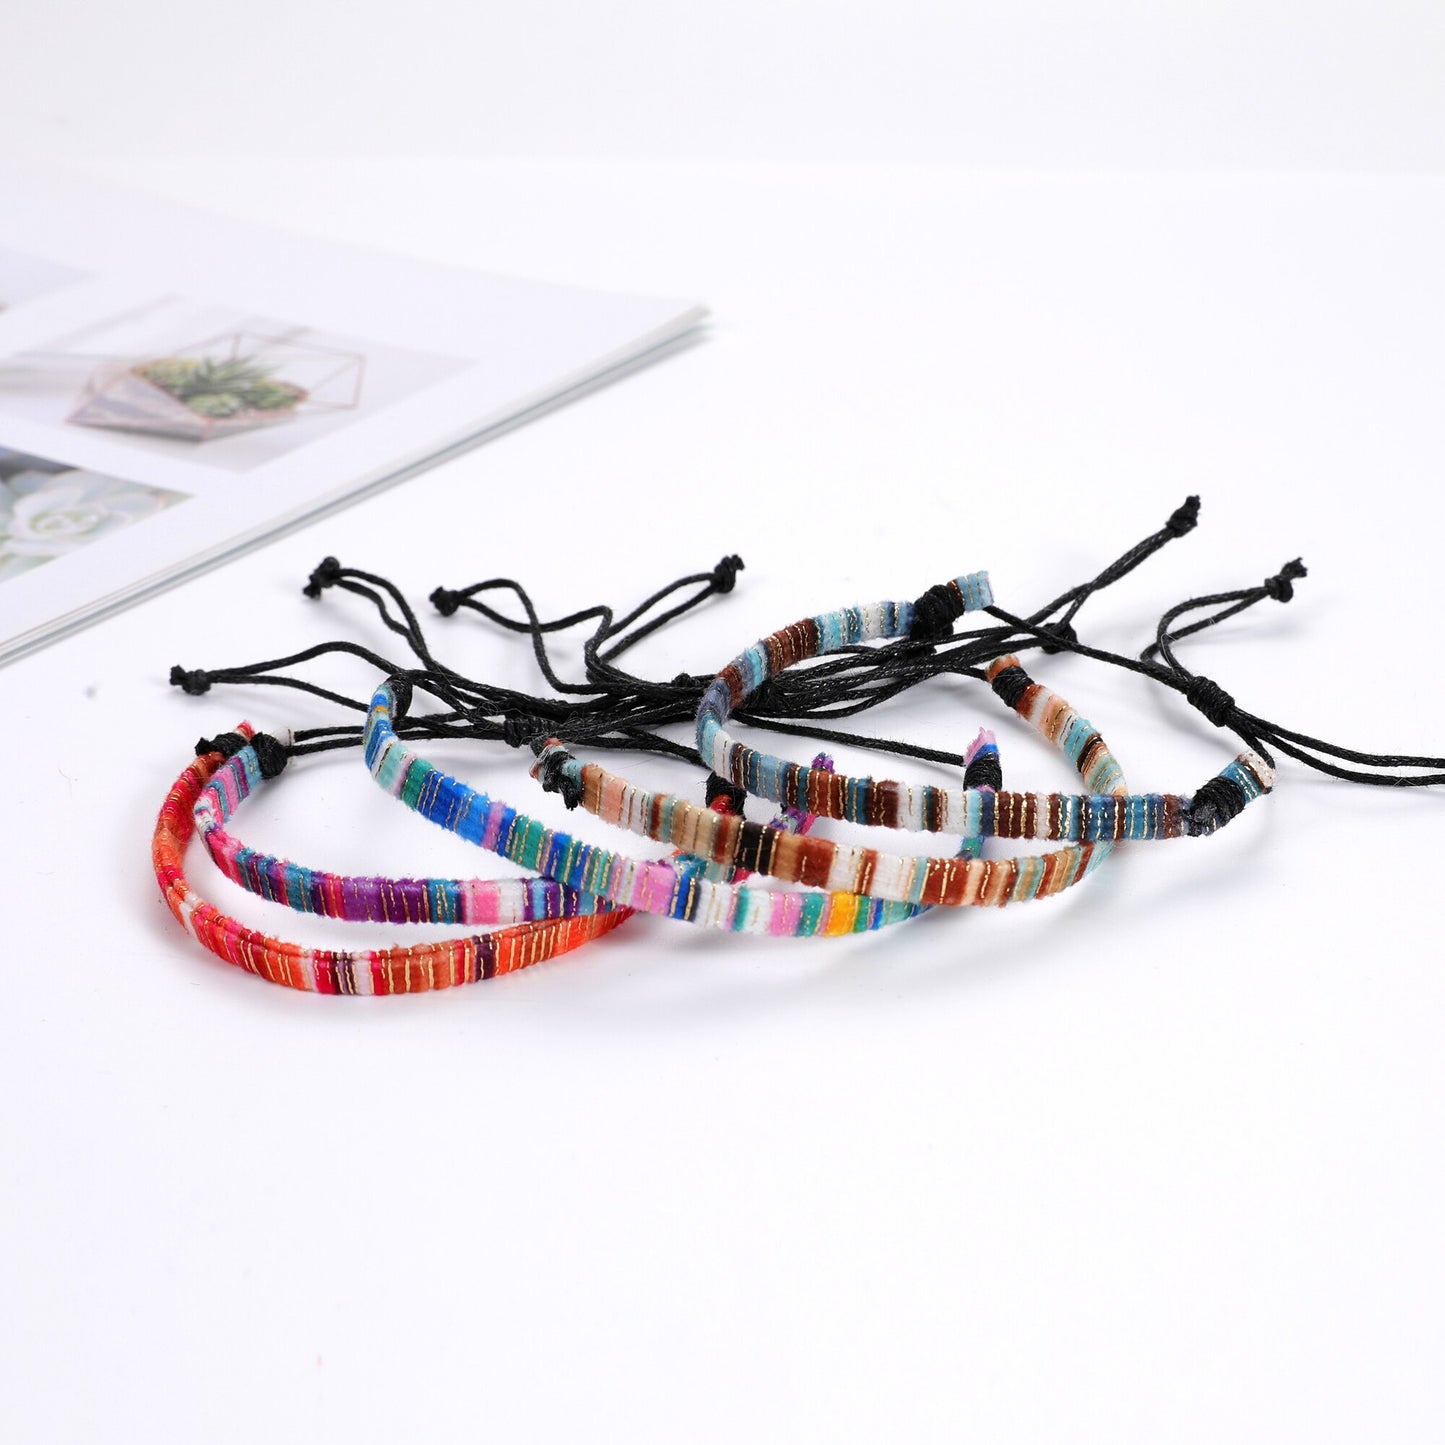 12Pcs Woven Bracelet Bulk for Women, Kids & Girls - Boho Friendship Bracelets Handmade Braided Rope Wrist String Chain Wholesale